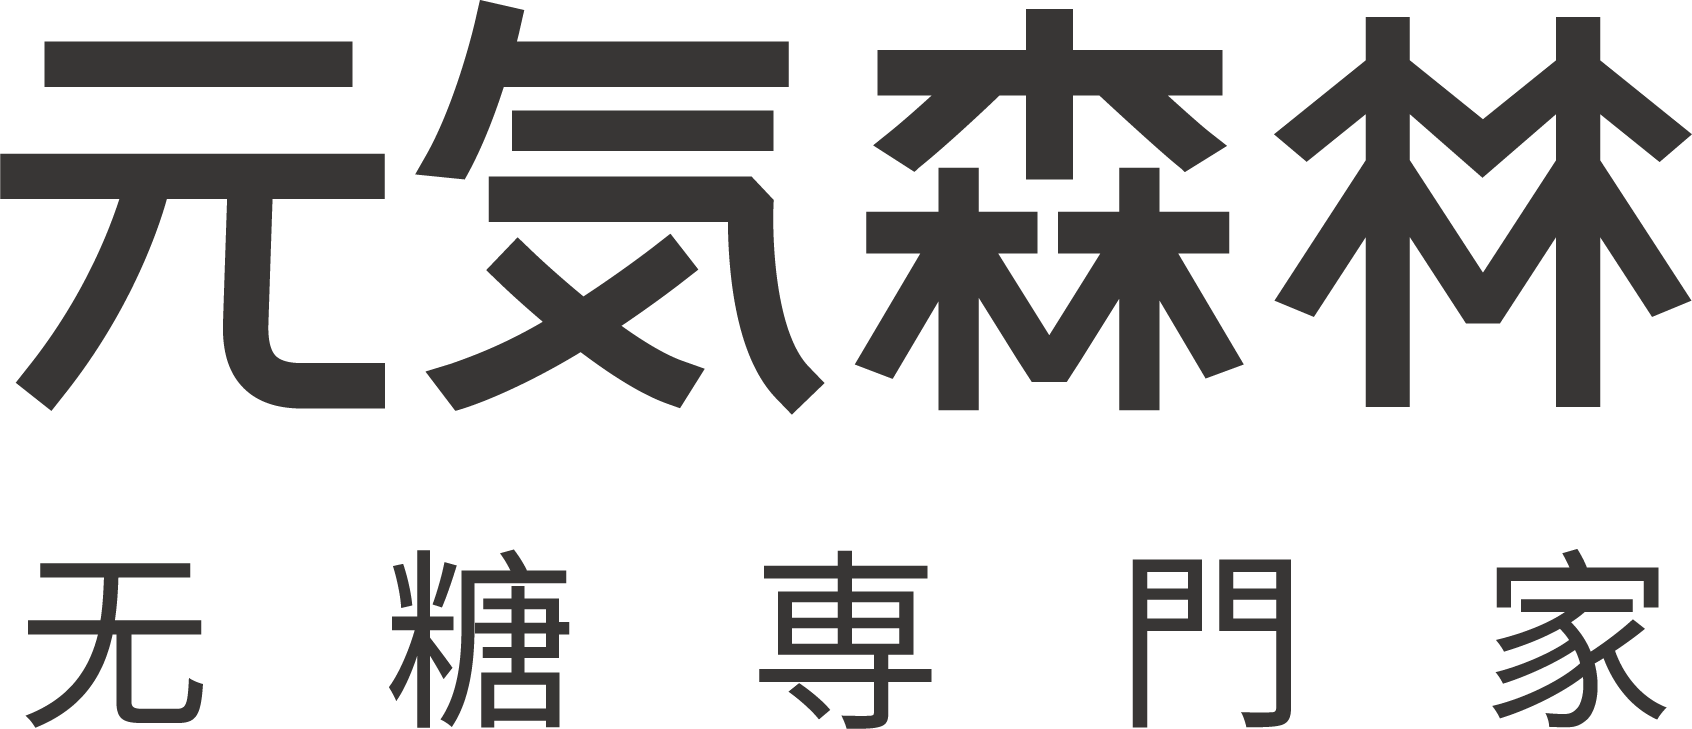 元气森林乳茶logo图片